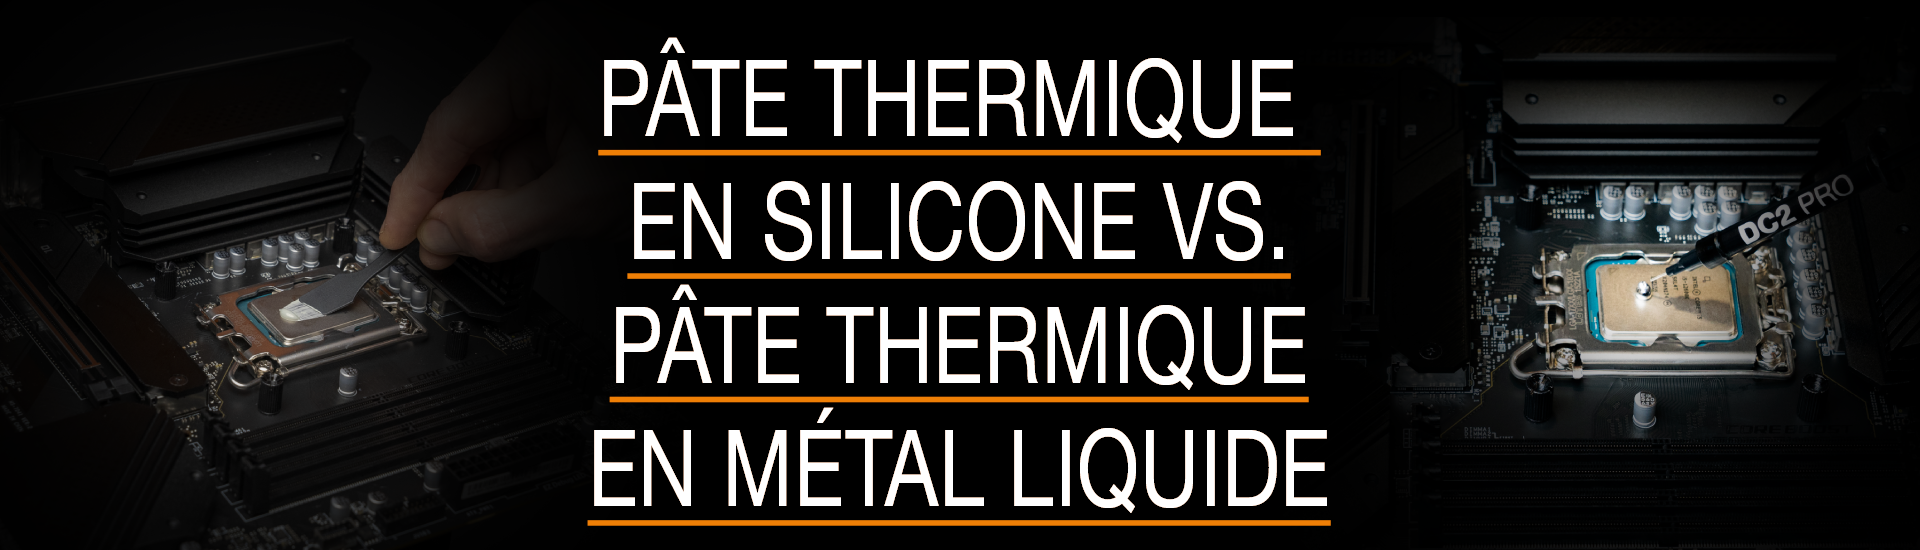 Pâte thermique en silicone vs. pâte thermique en métal liquide